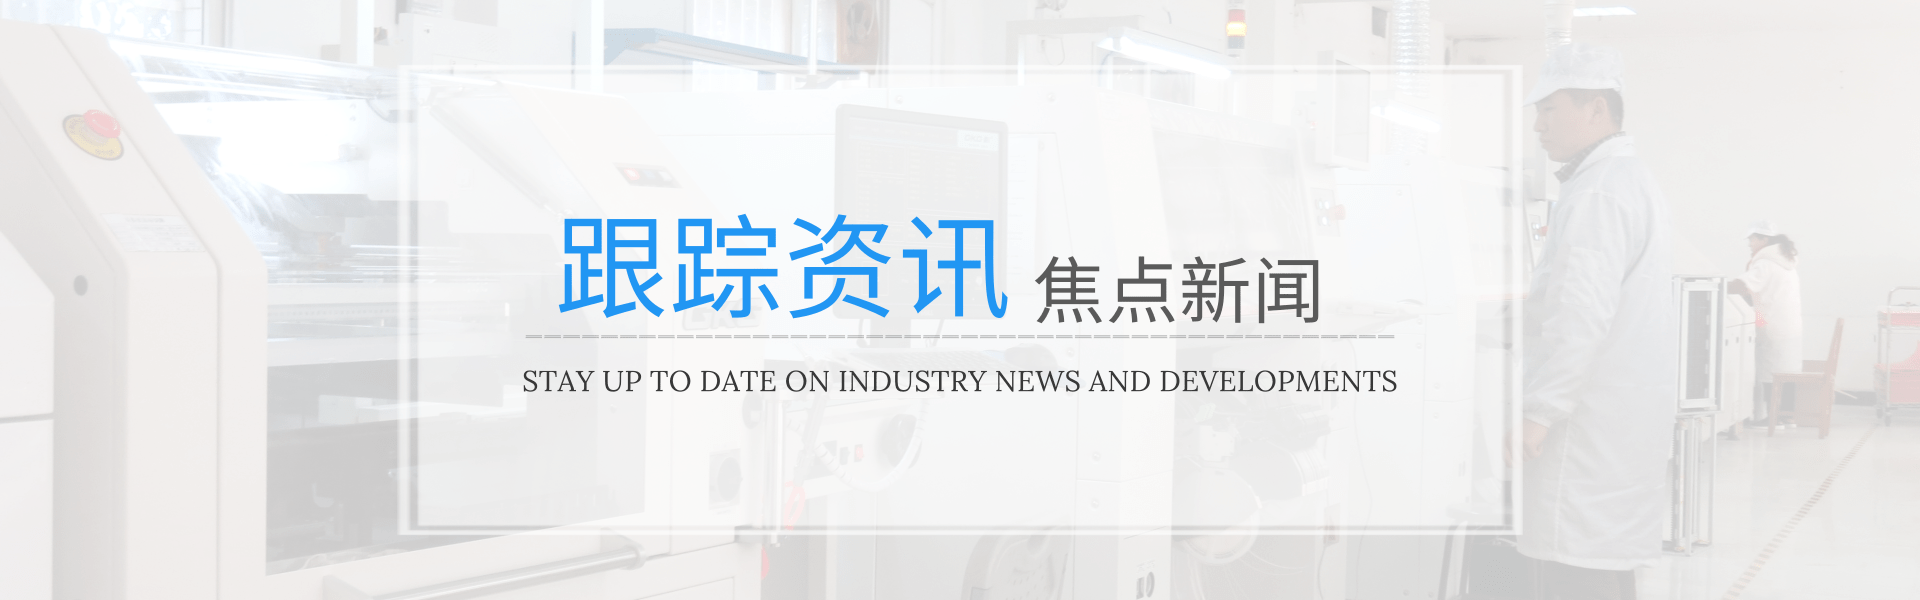 2021年全自动点胶机在杭州将迎来新的机遇-深圳市润之鑫科技有限公司